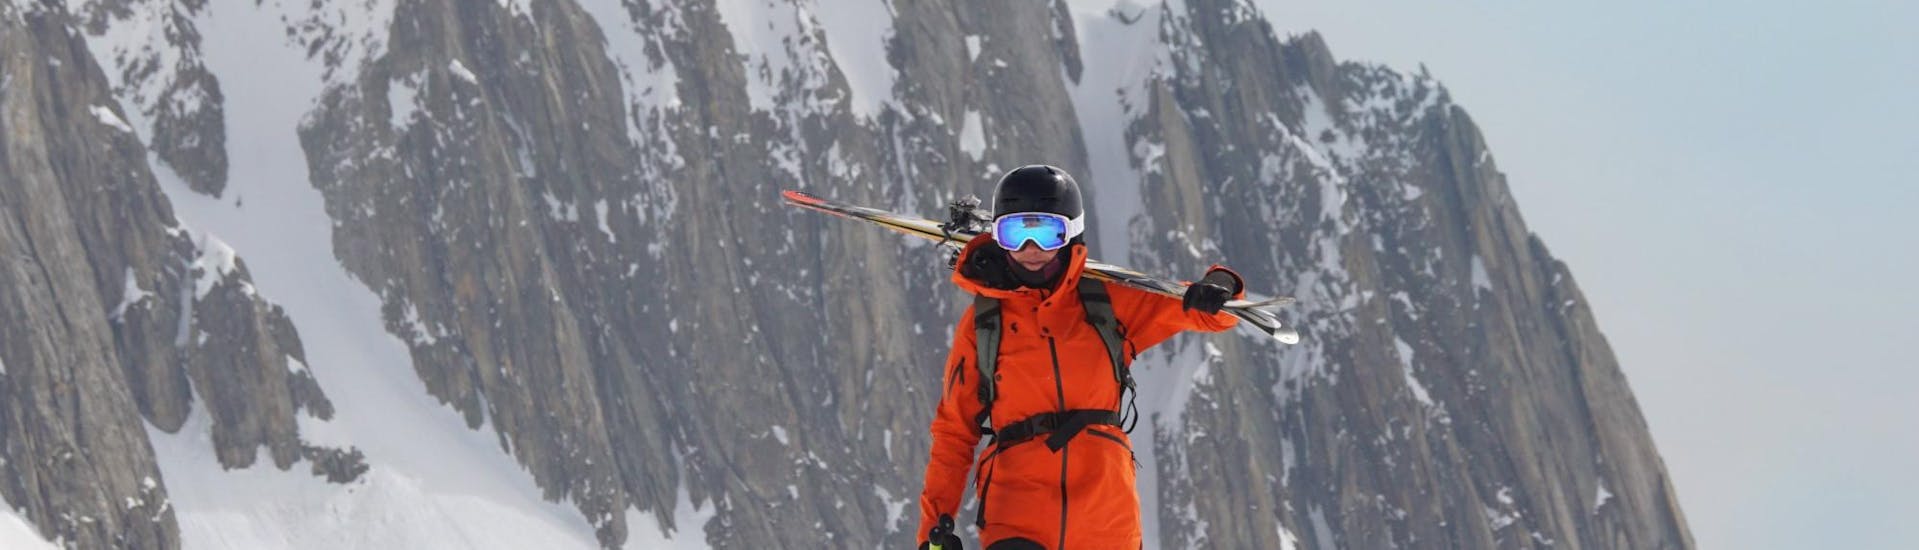 Lezioni private di sci per adulti per tutti i livelli con Eco Ski School Andermatt.